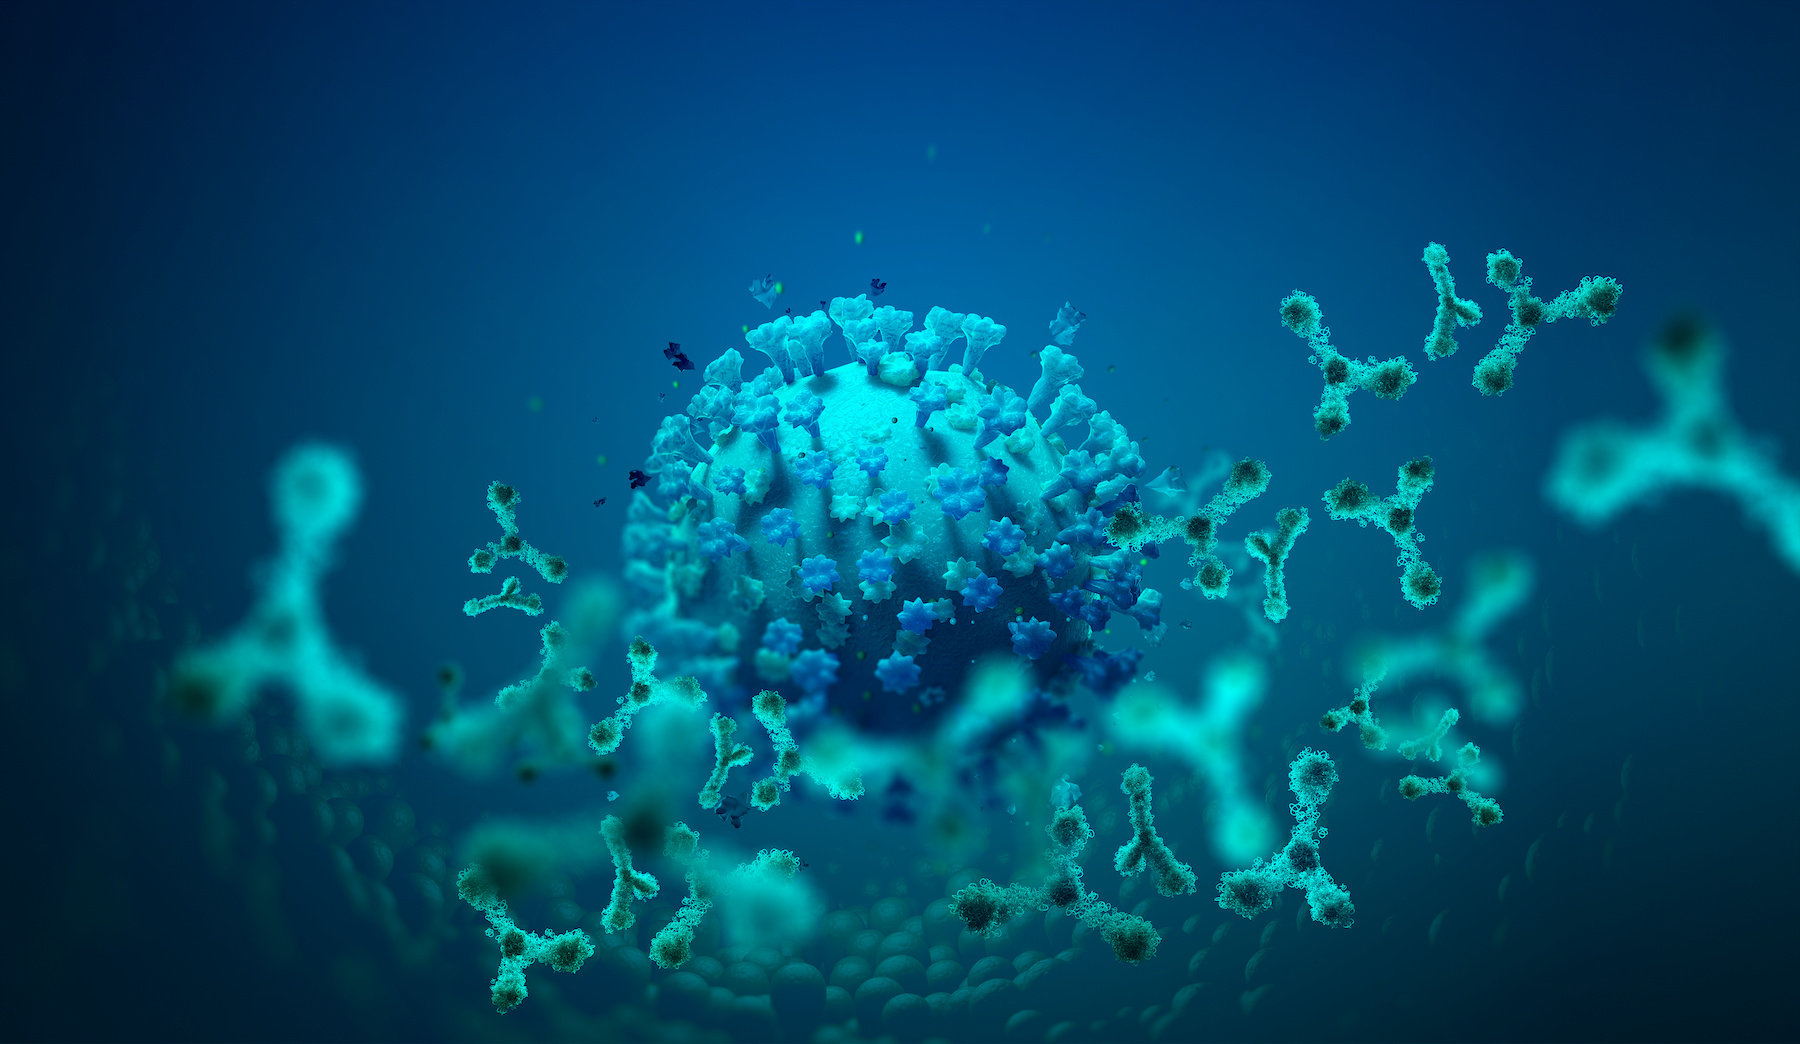 Les anticorps modifiés pourrait être utiles dans la lutte contre de futures menaces virales. © Siarhei, Adobe Stock